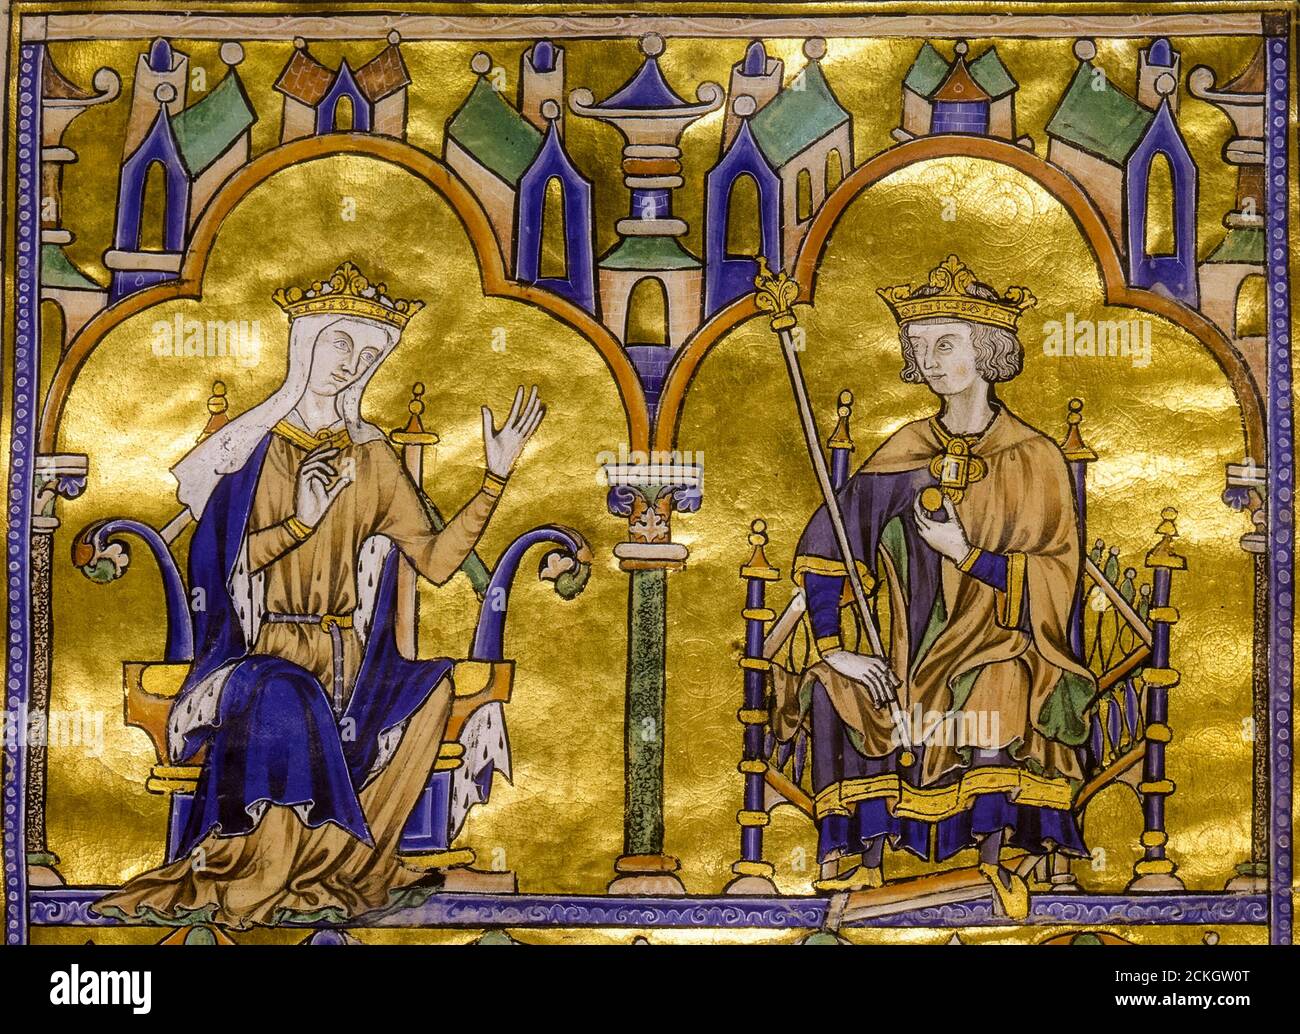 Blanche de Castille (1188-1252), Reine Consort de France et son fils le roi Louis IX de France (1214-1270), de la Bible moralisée de Tolède, manuscrit illuminé du XIIIe siècle, 1200-1299 Banque D'Images